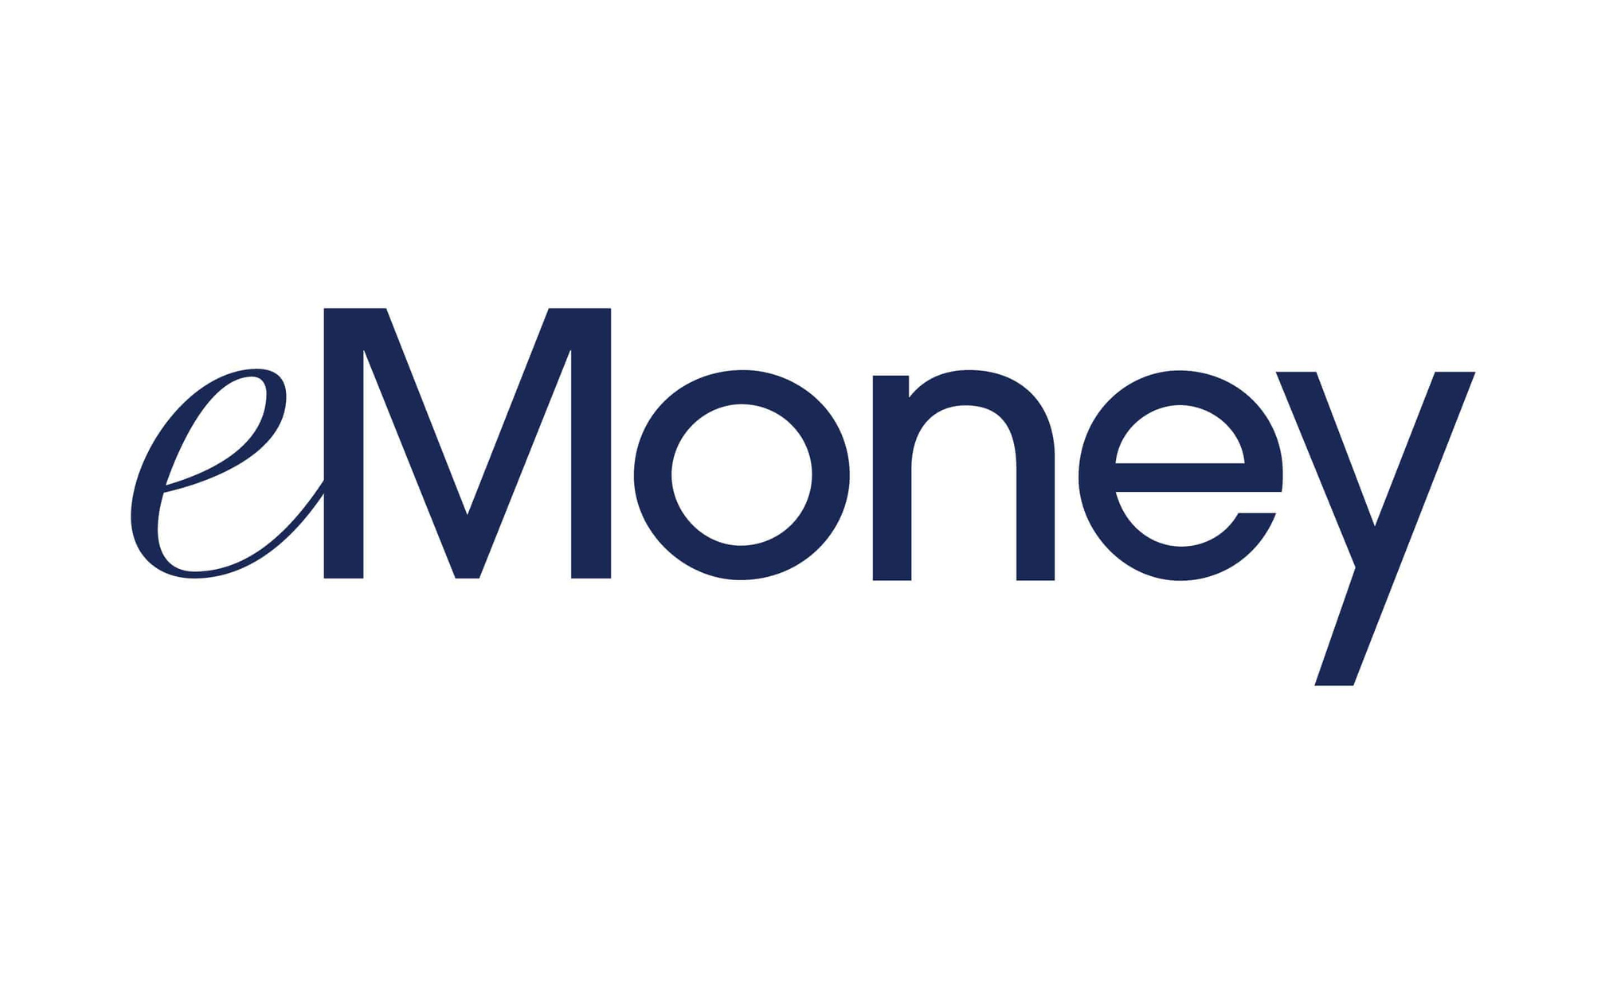 eMoney Logo